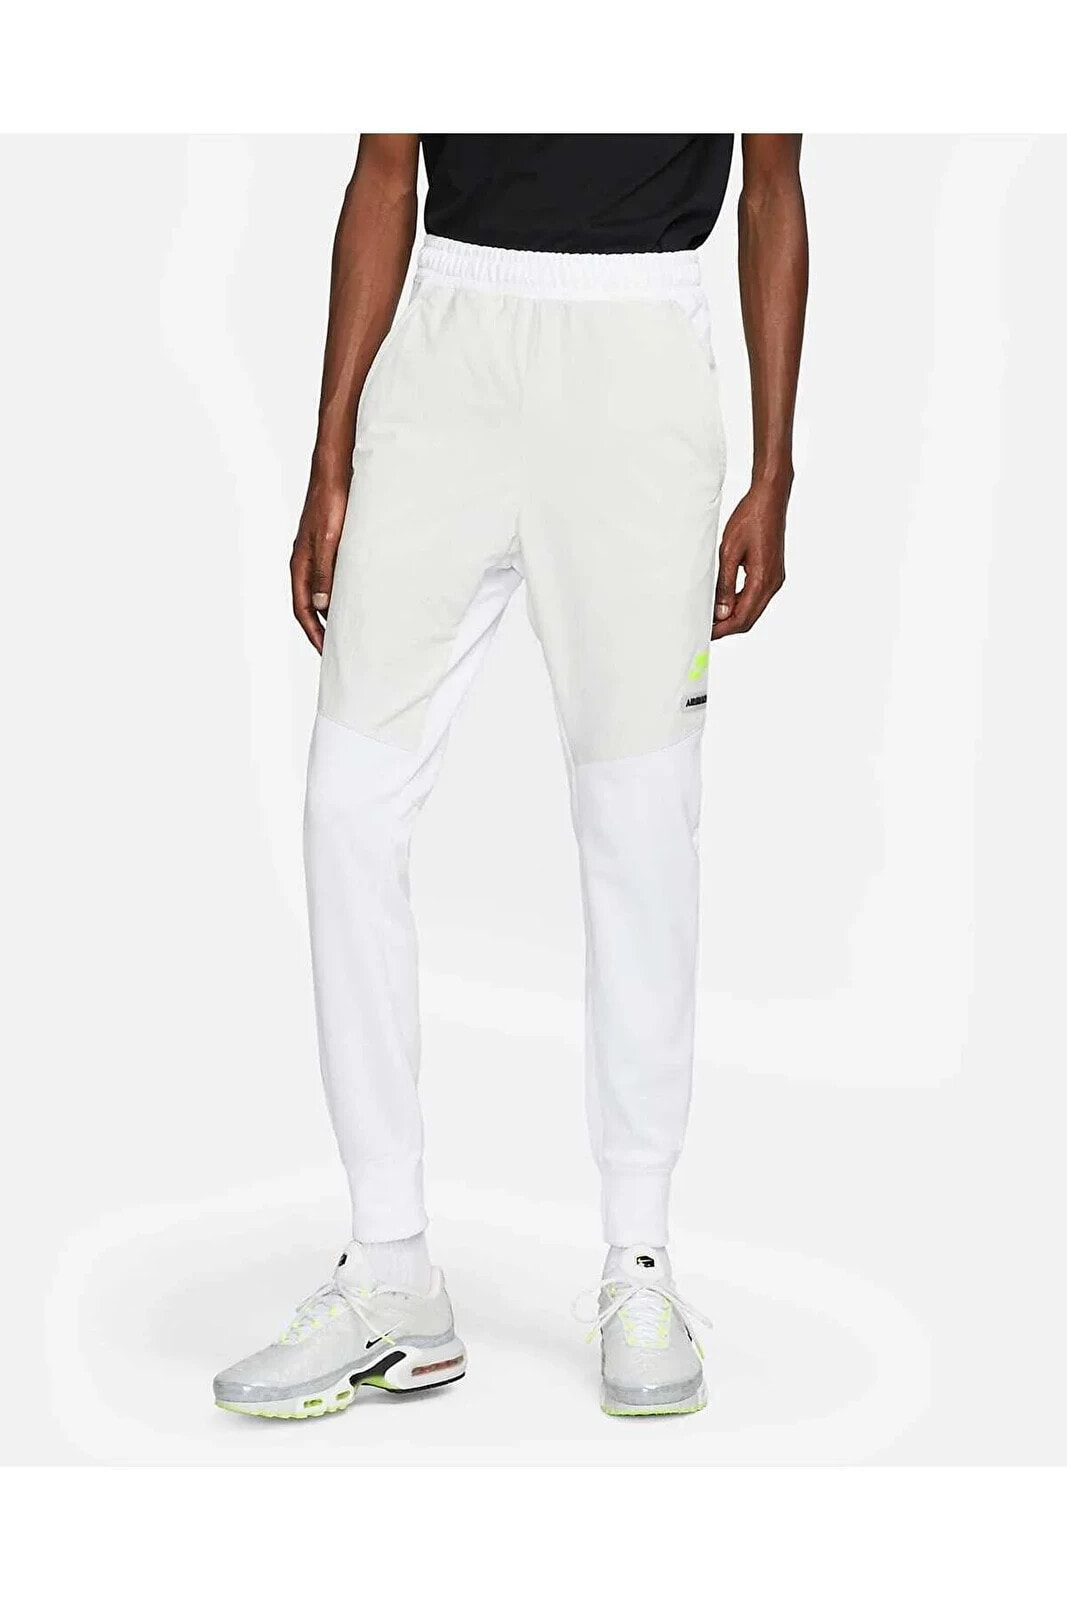 Sportswear Air Max Beyaz Erkek Eşofman Altı FB1436-100